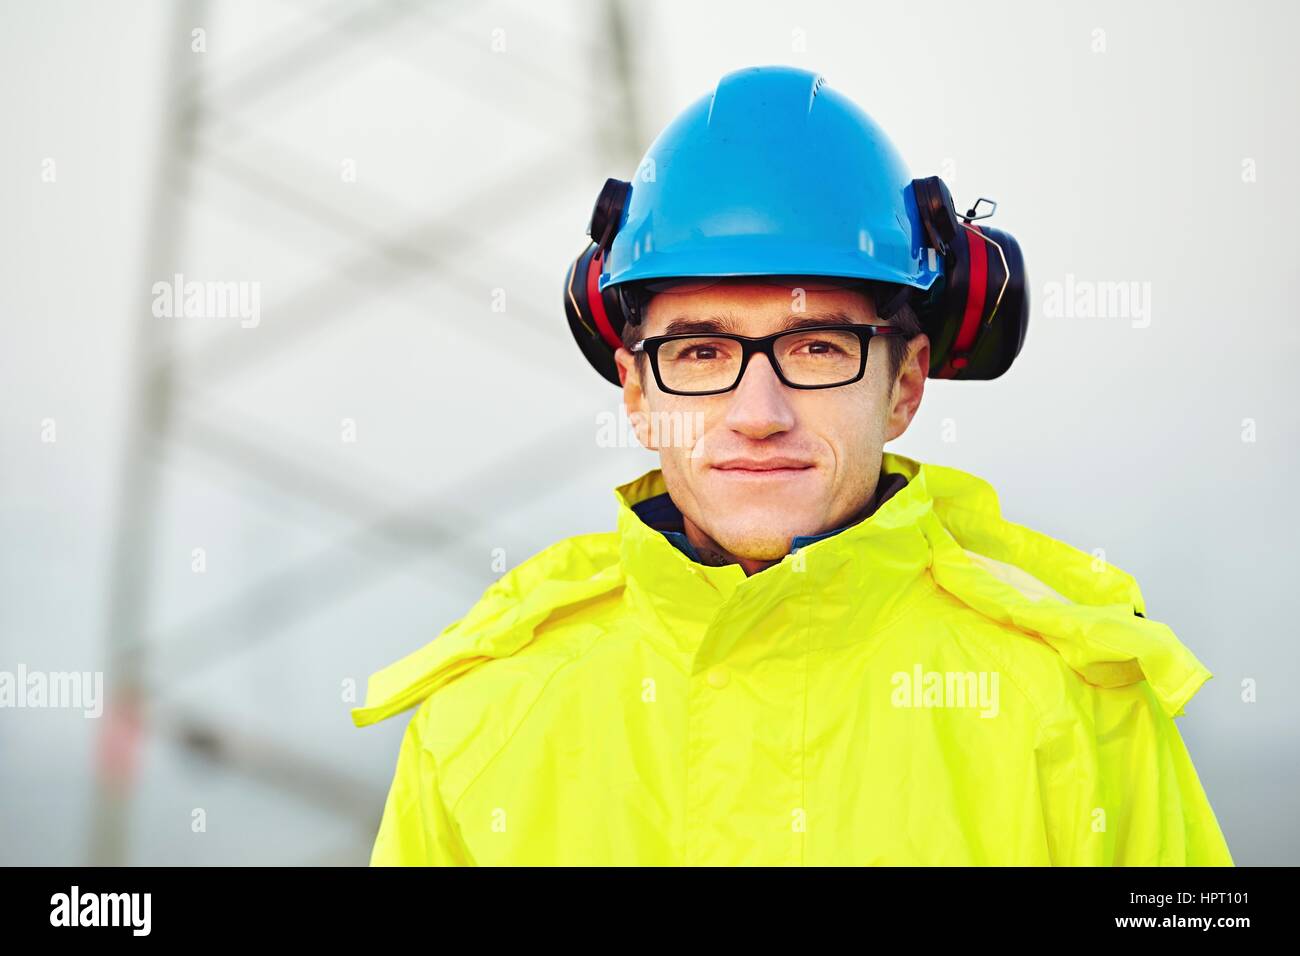 Arbeiter, reflektierende Kleidung mit Helm zu tragen Stockfotografie - Alamy